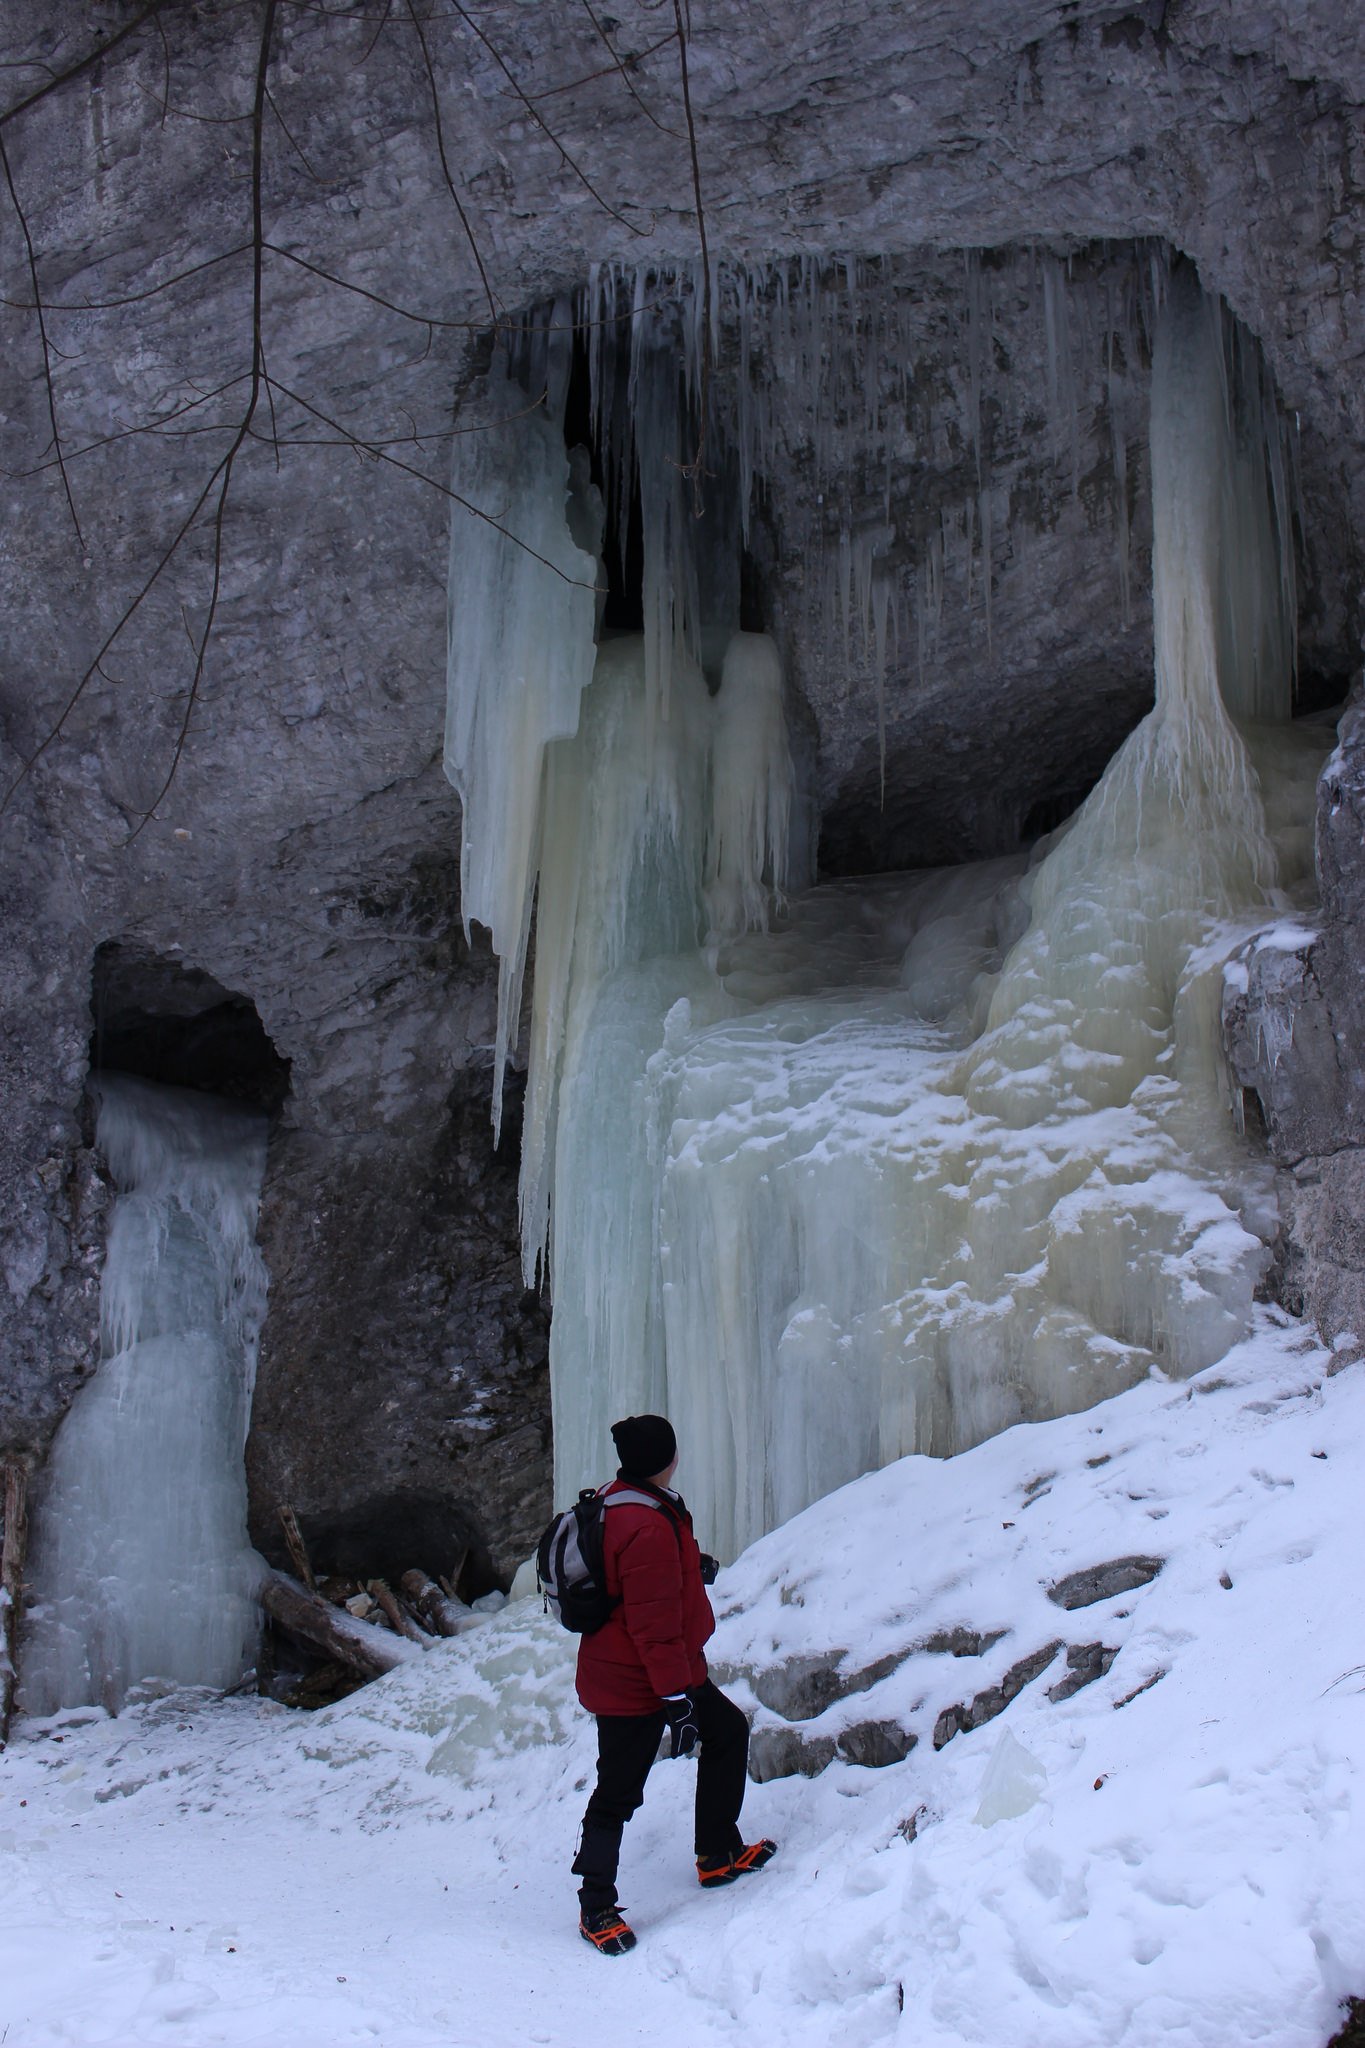 Suchá Belá gorge, winter hiking trip, Košice region, Slovakia – 22